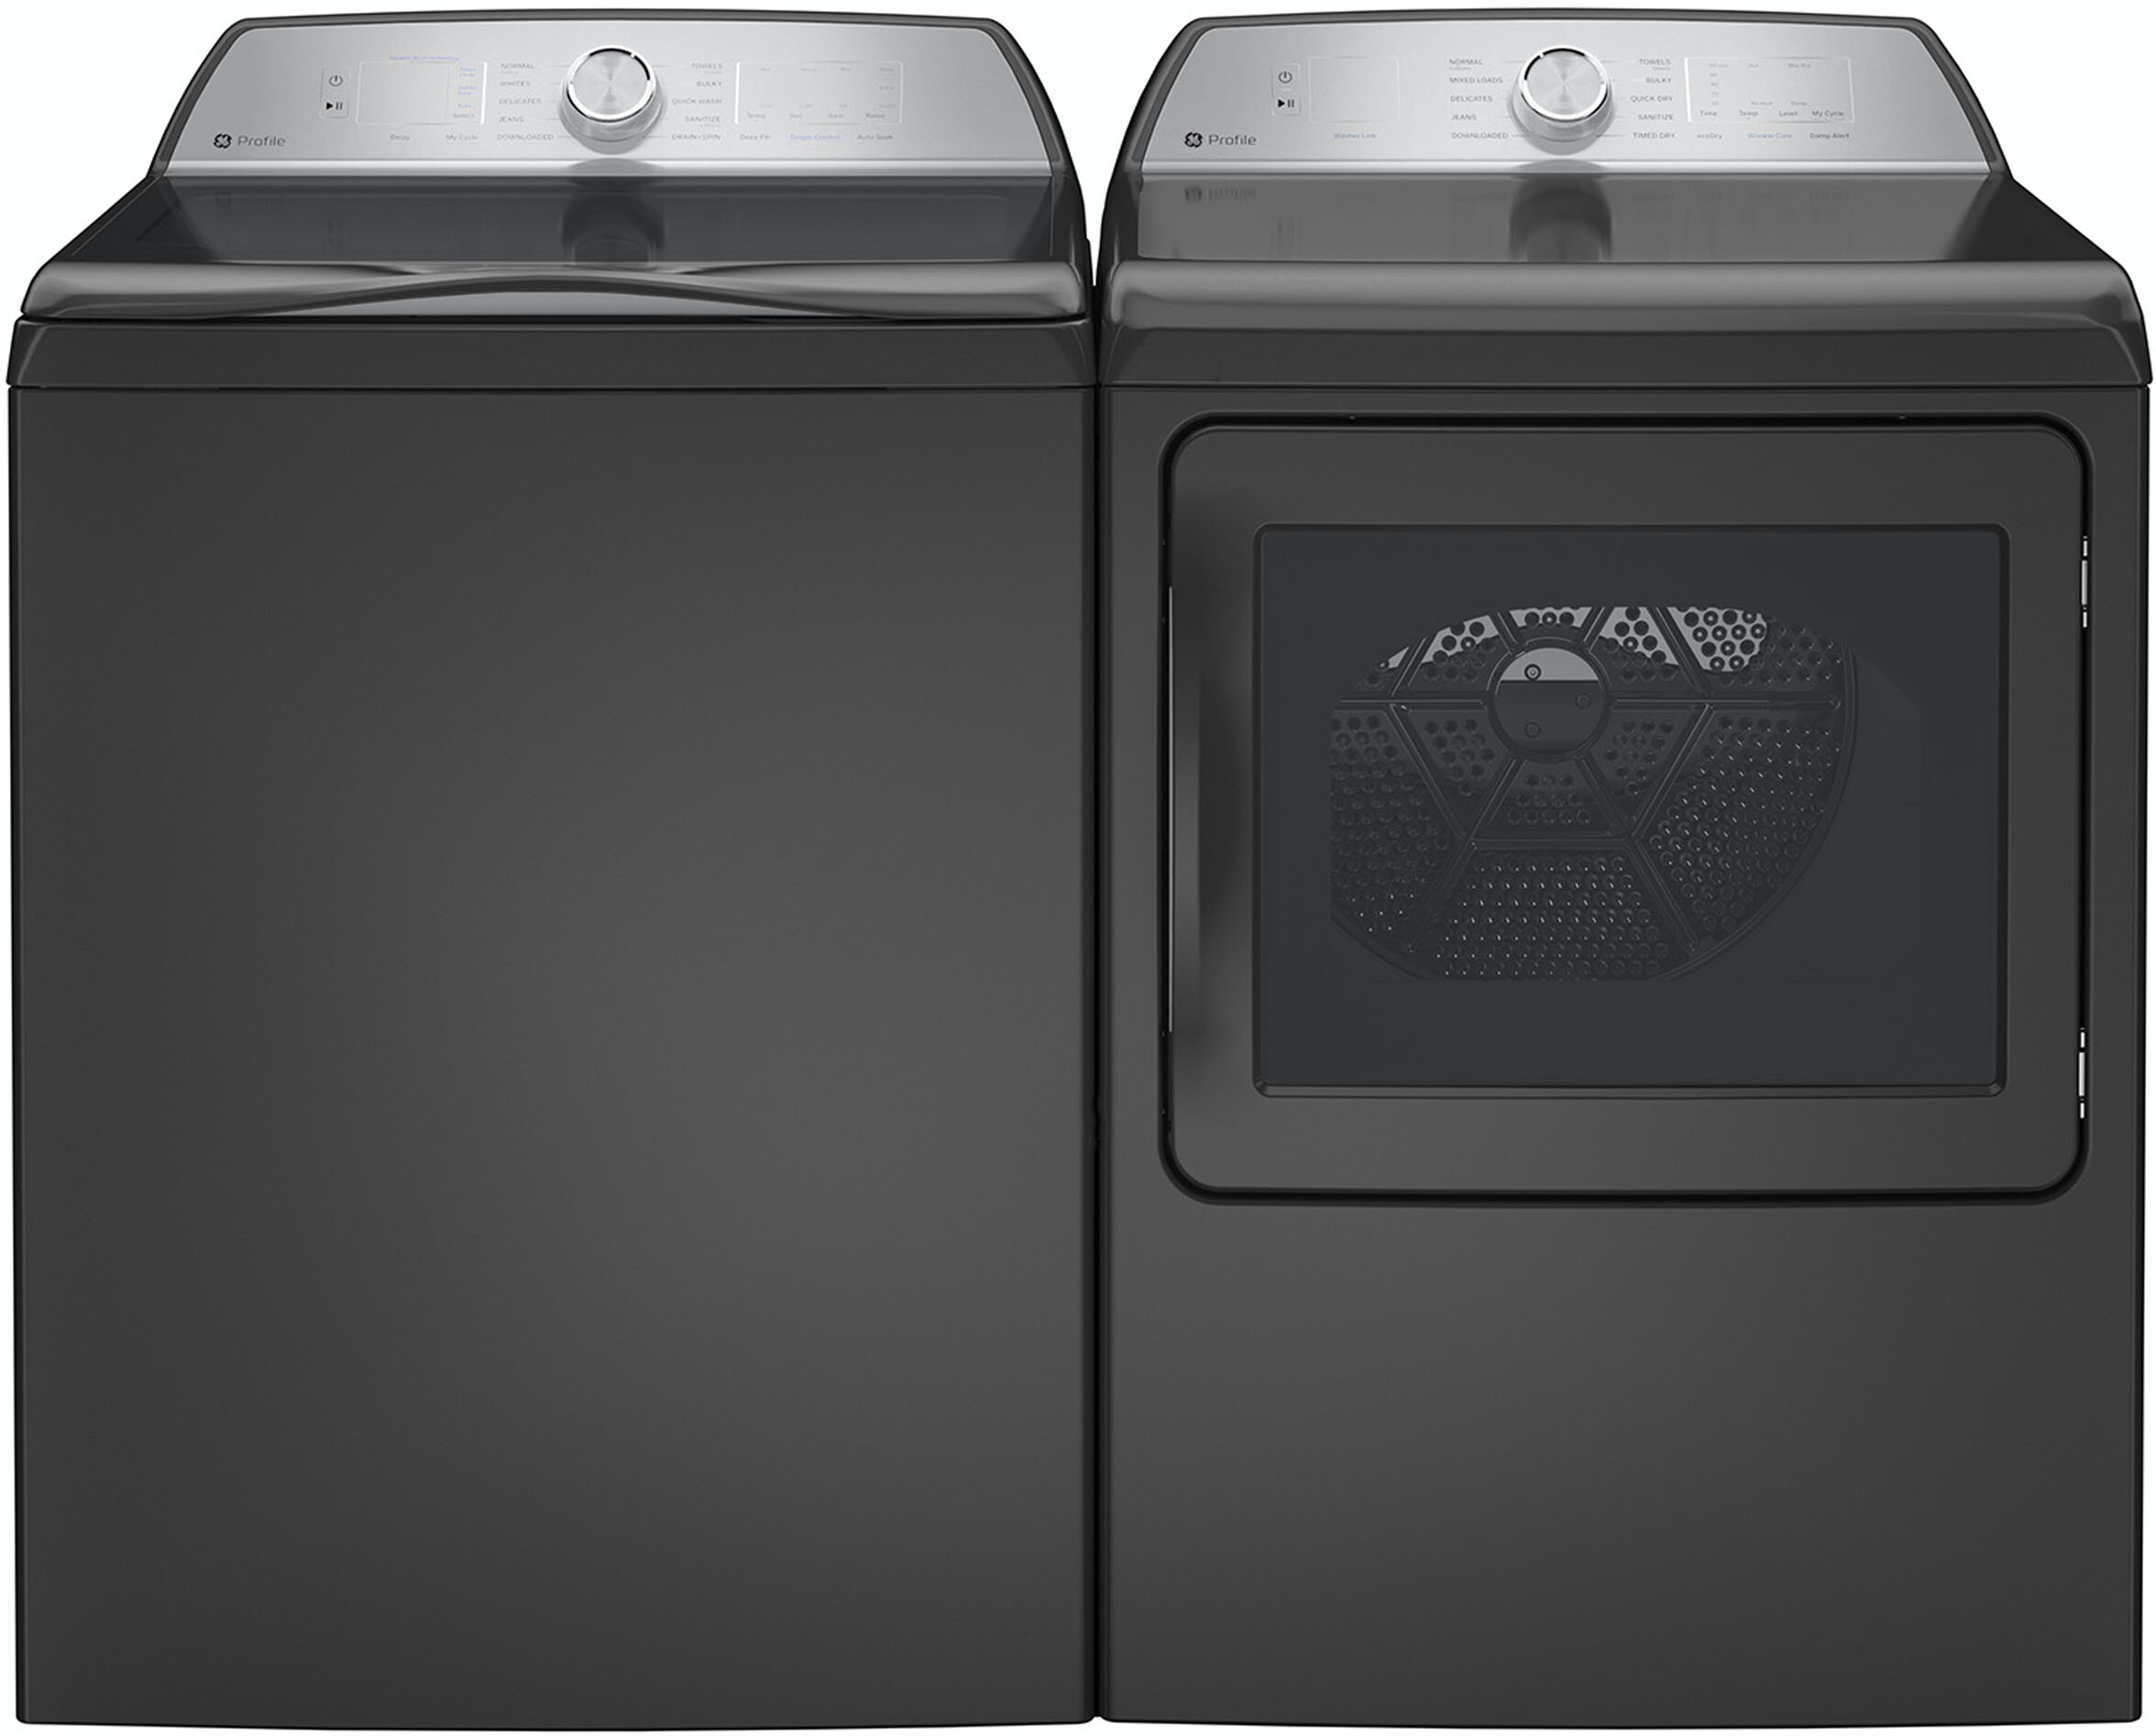 GE Top Load Washer & Dryer Set GEWADREDG600